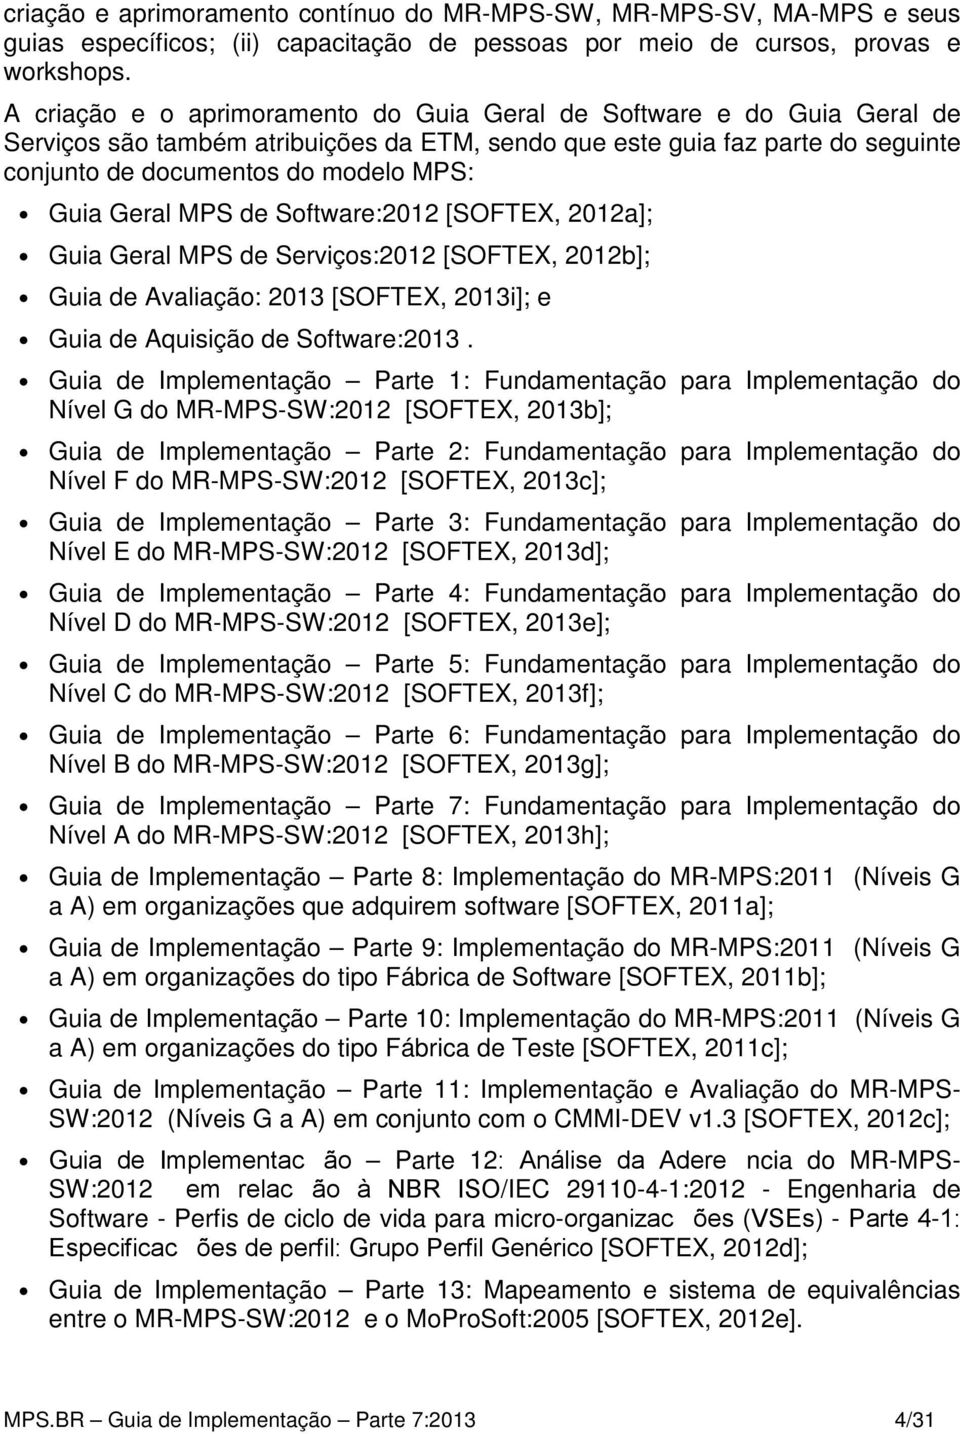 Geral MPS de Software:2012 [SOFTEX, 2012a]; Guia Geral MPS de Serviços:2012 [SOFTEX, 2012b]; Guia de Avaliação: 2013 [SOFTEX, 2013i]; e Guia de Aquisição de Software:2013.